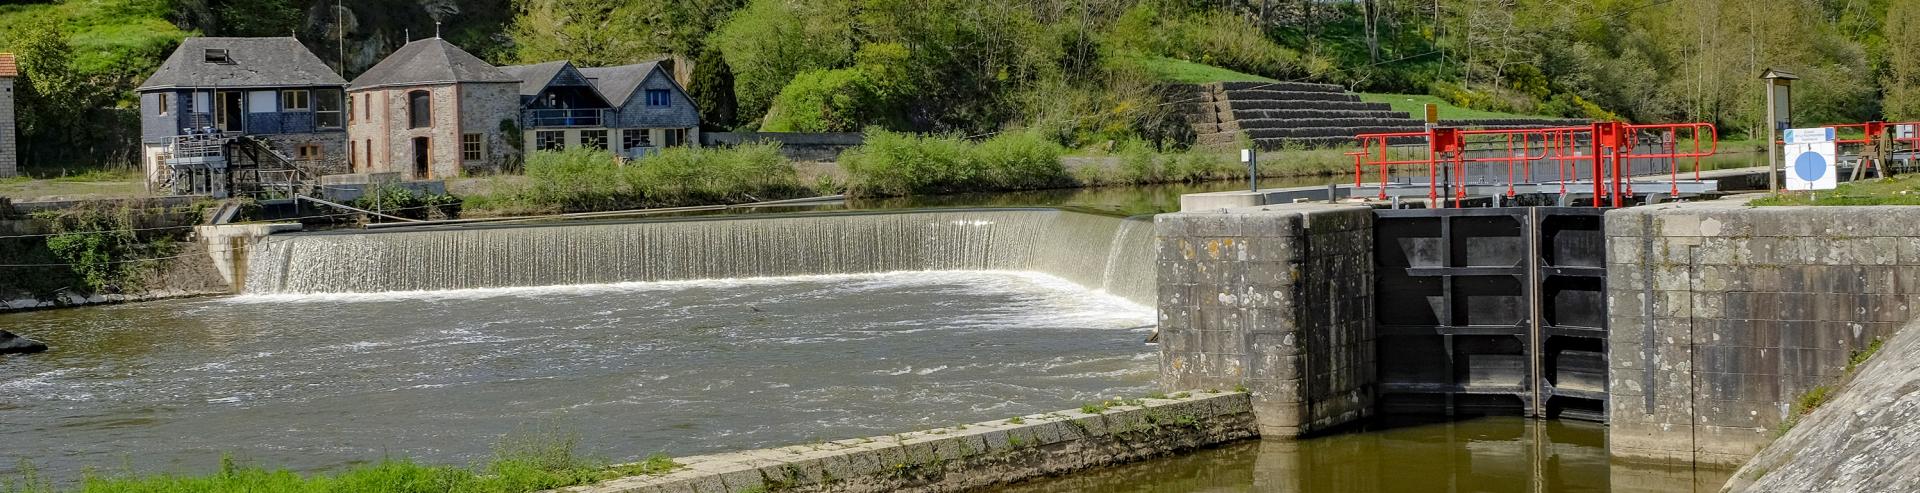 Rivière La Mayenne - avis à la batellerie